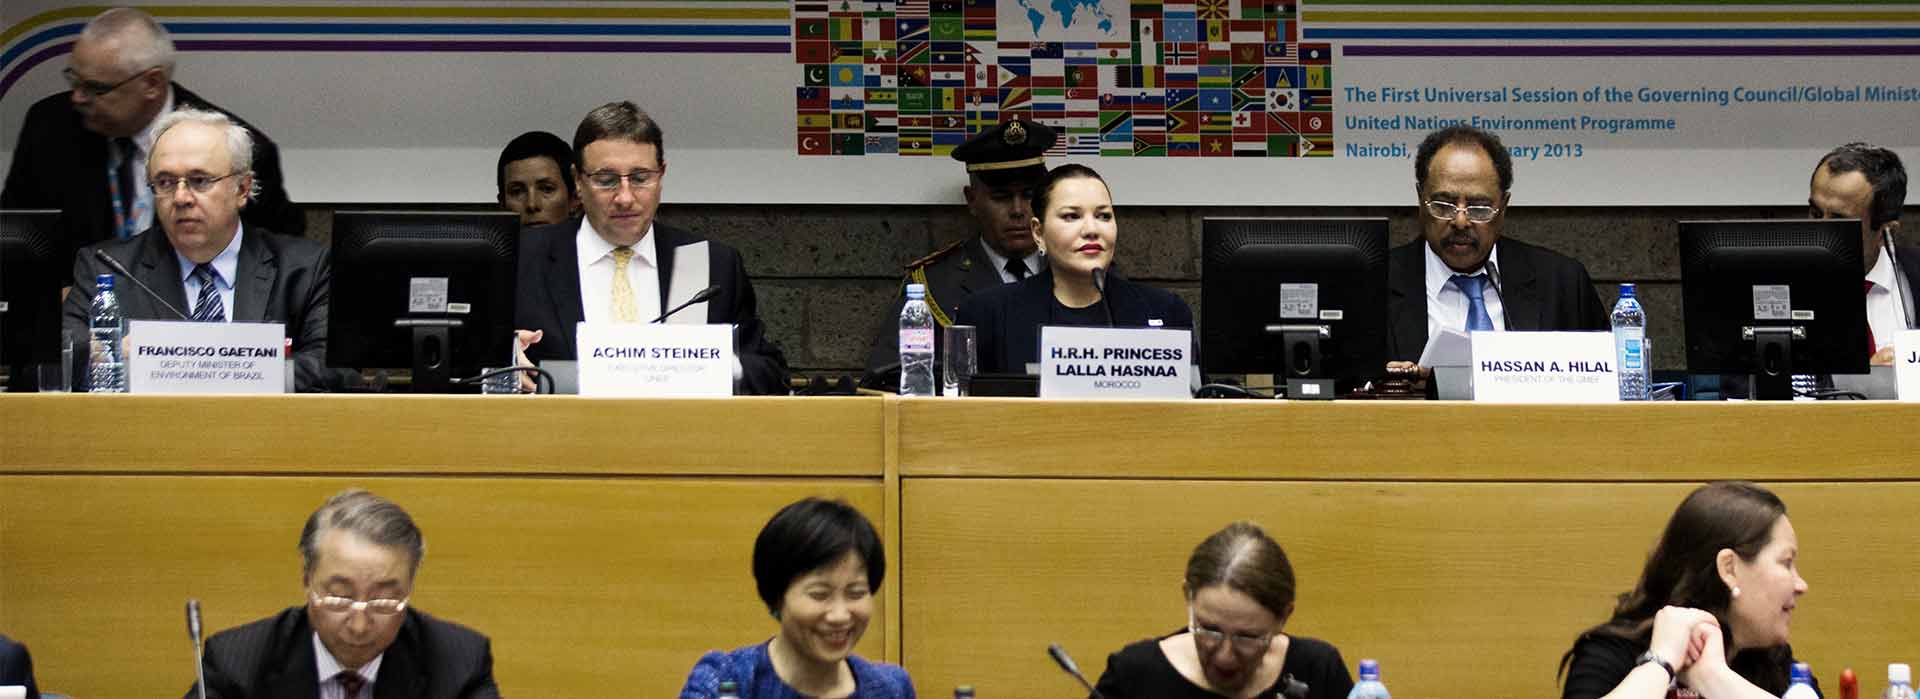 <strong>Son Altesse Royale la Princesse Lalla Hasnaa</strong> assiste à la 27ème session du Conseil d’Administration/Forum Ministériel mondial de l’Environnement du Programme des Nations Unies pour l’Environnement (PNUE) lundi 18 février 2013 à Nairobi (Kenya).